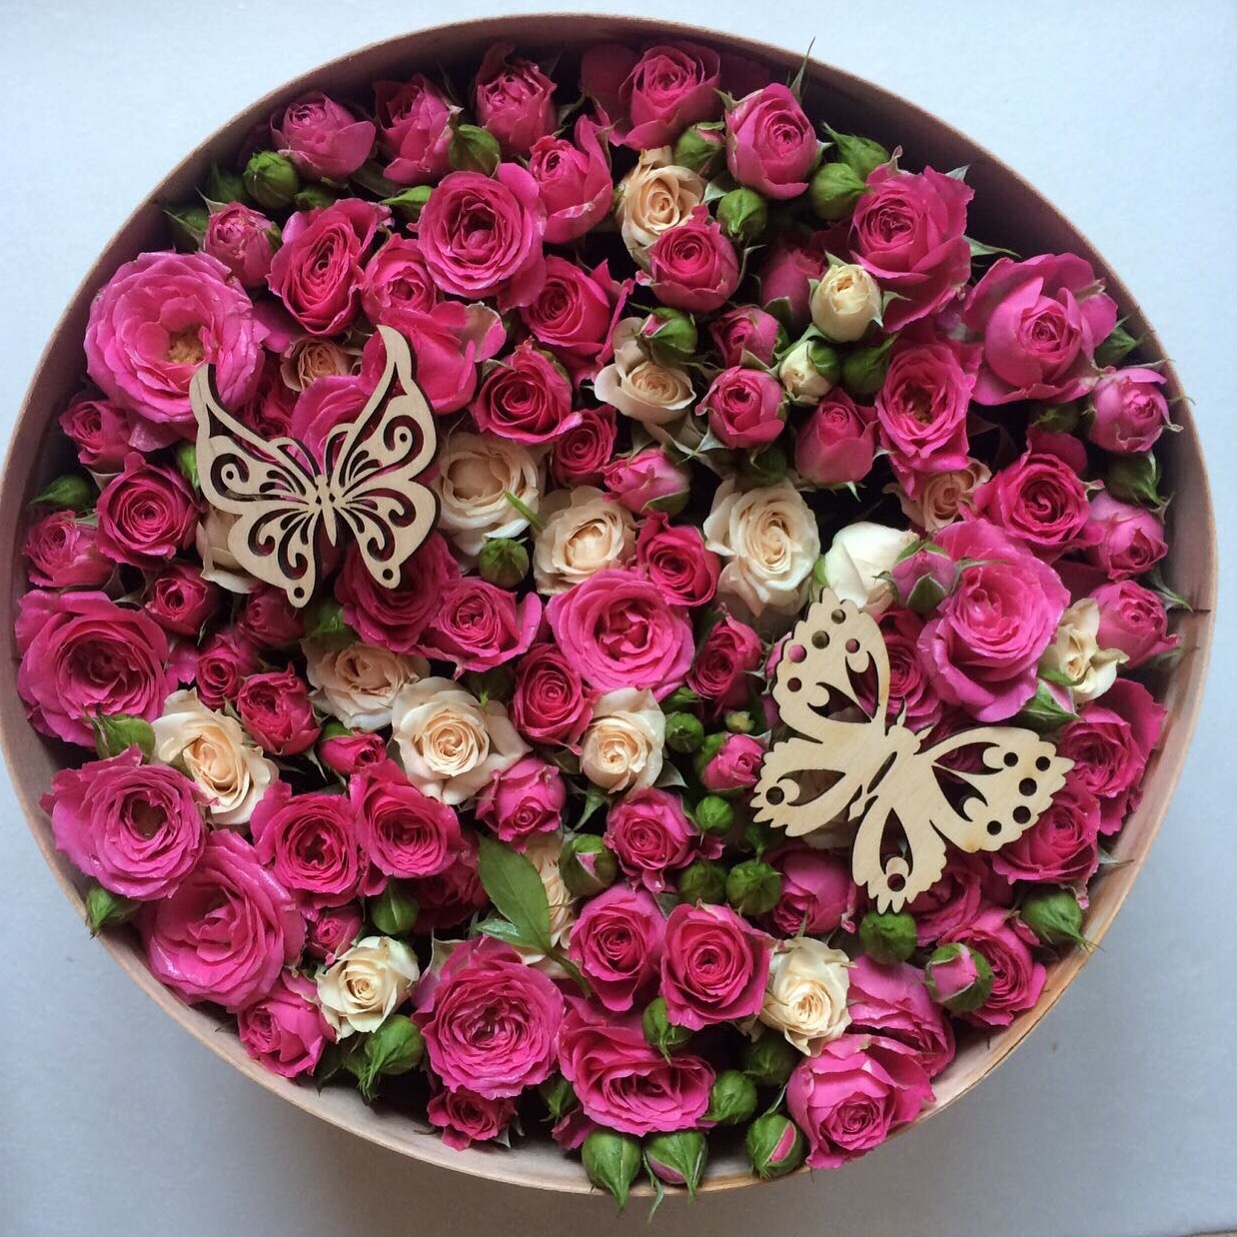 Кругла коробка з ніжними трояндами в поєднанні з деревом